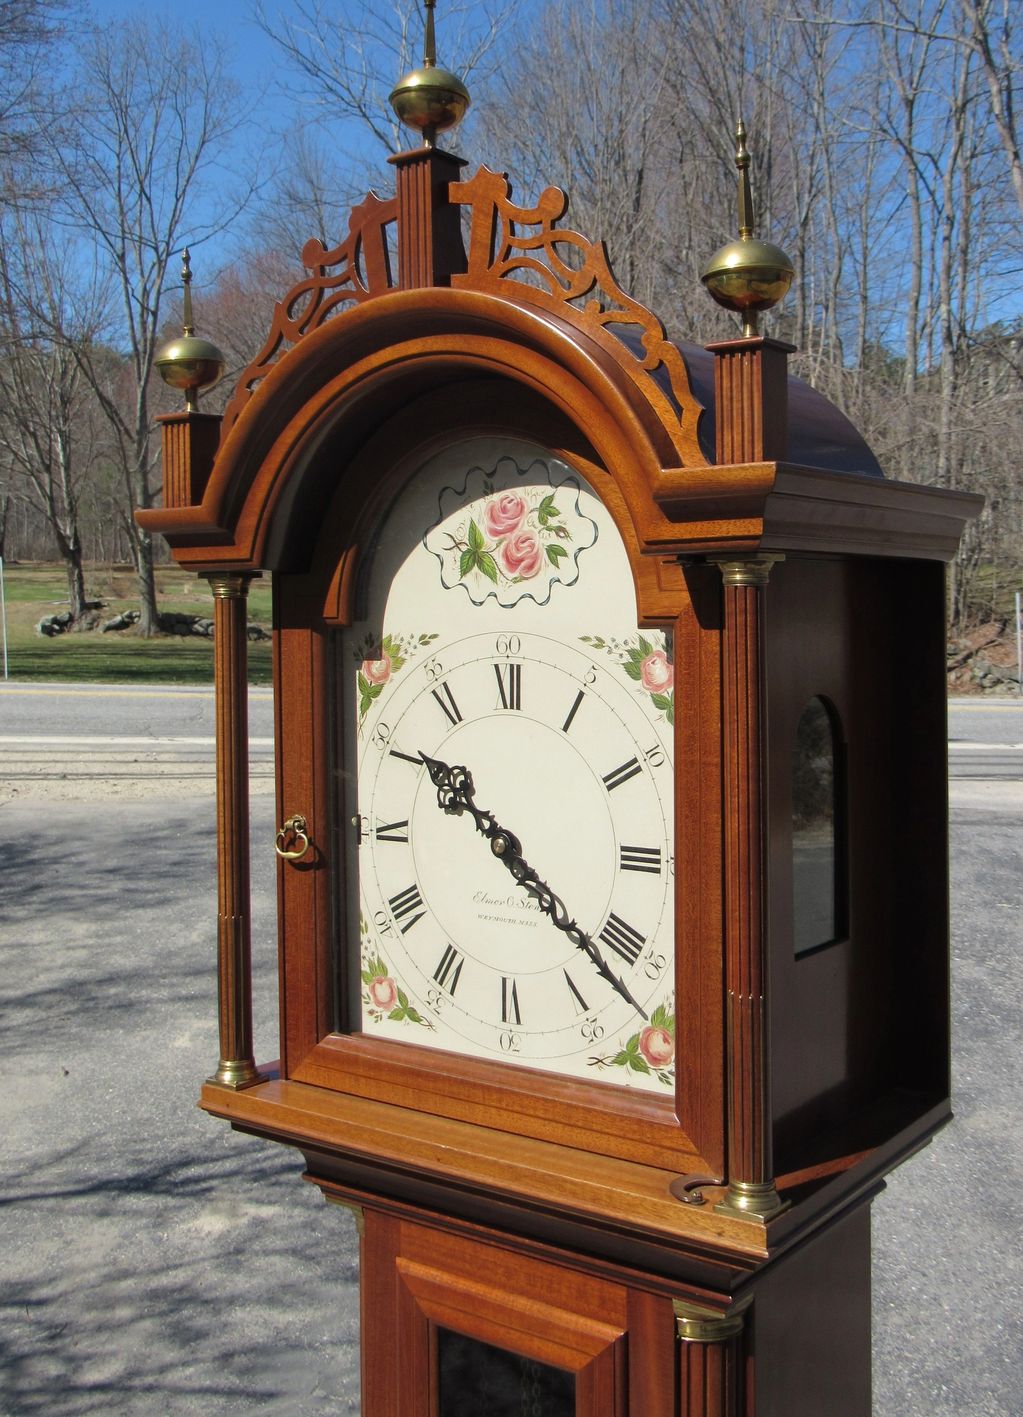 Elmer O Stennis Grandfather Clock #1
Circa 1958

Pompeo Clocks Auction Estates